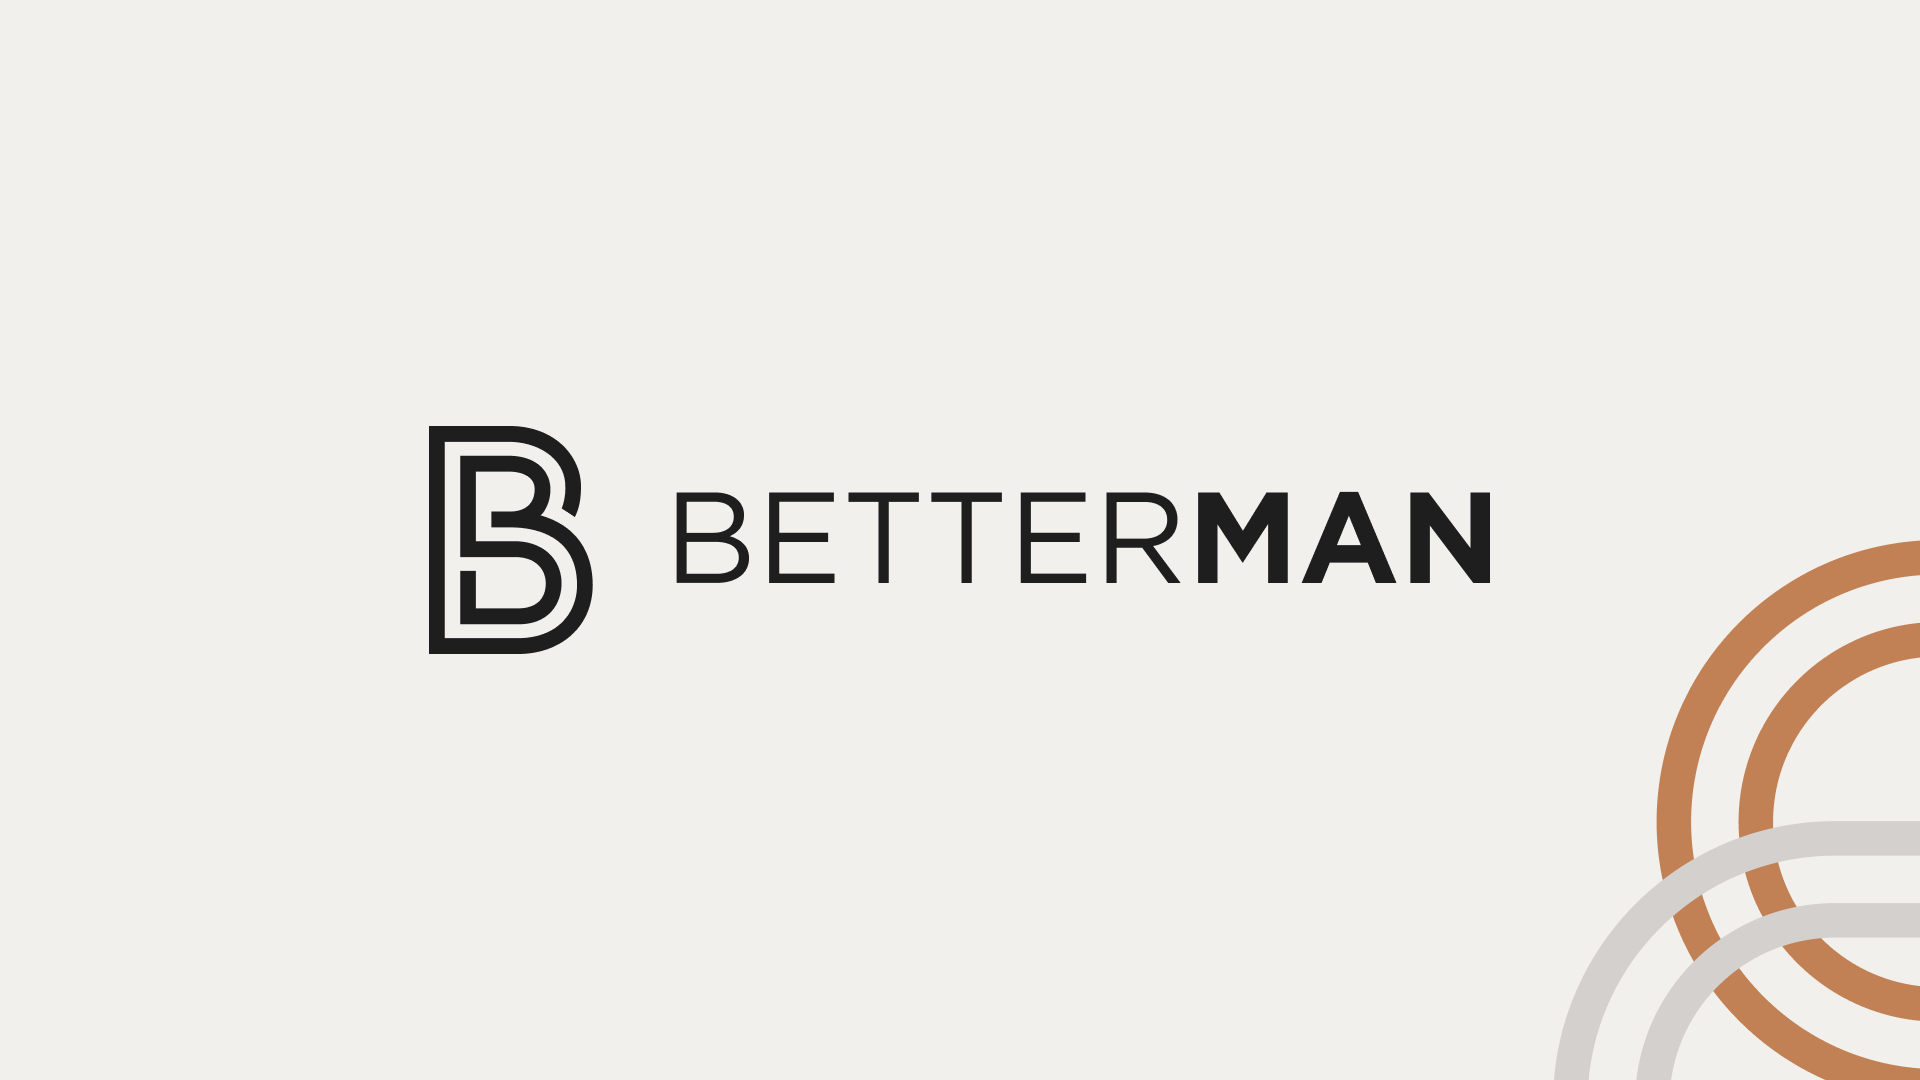 Men's Defined Study by Betterman with Joe Herrera